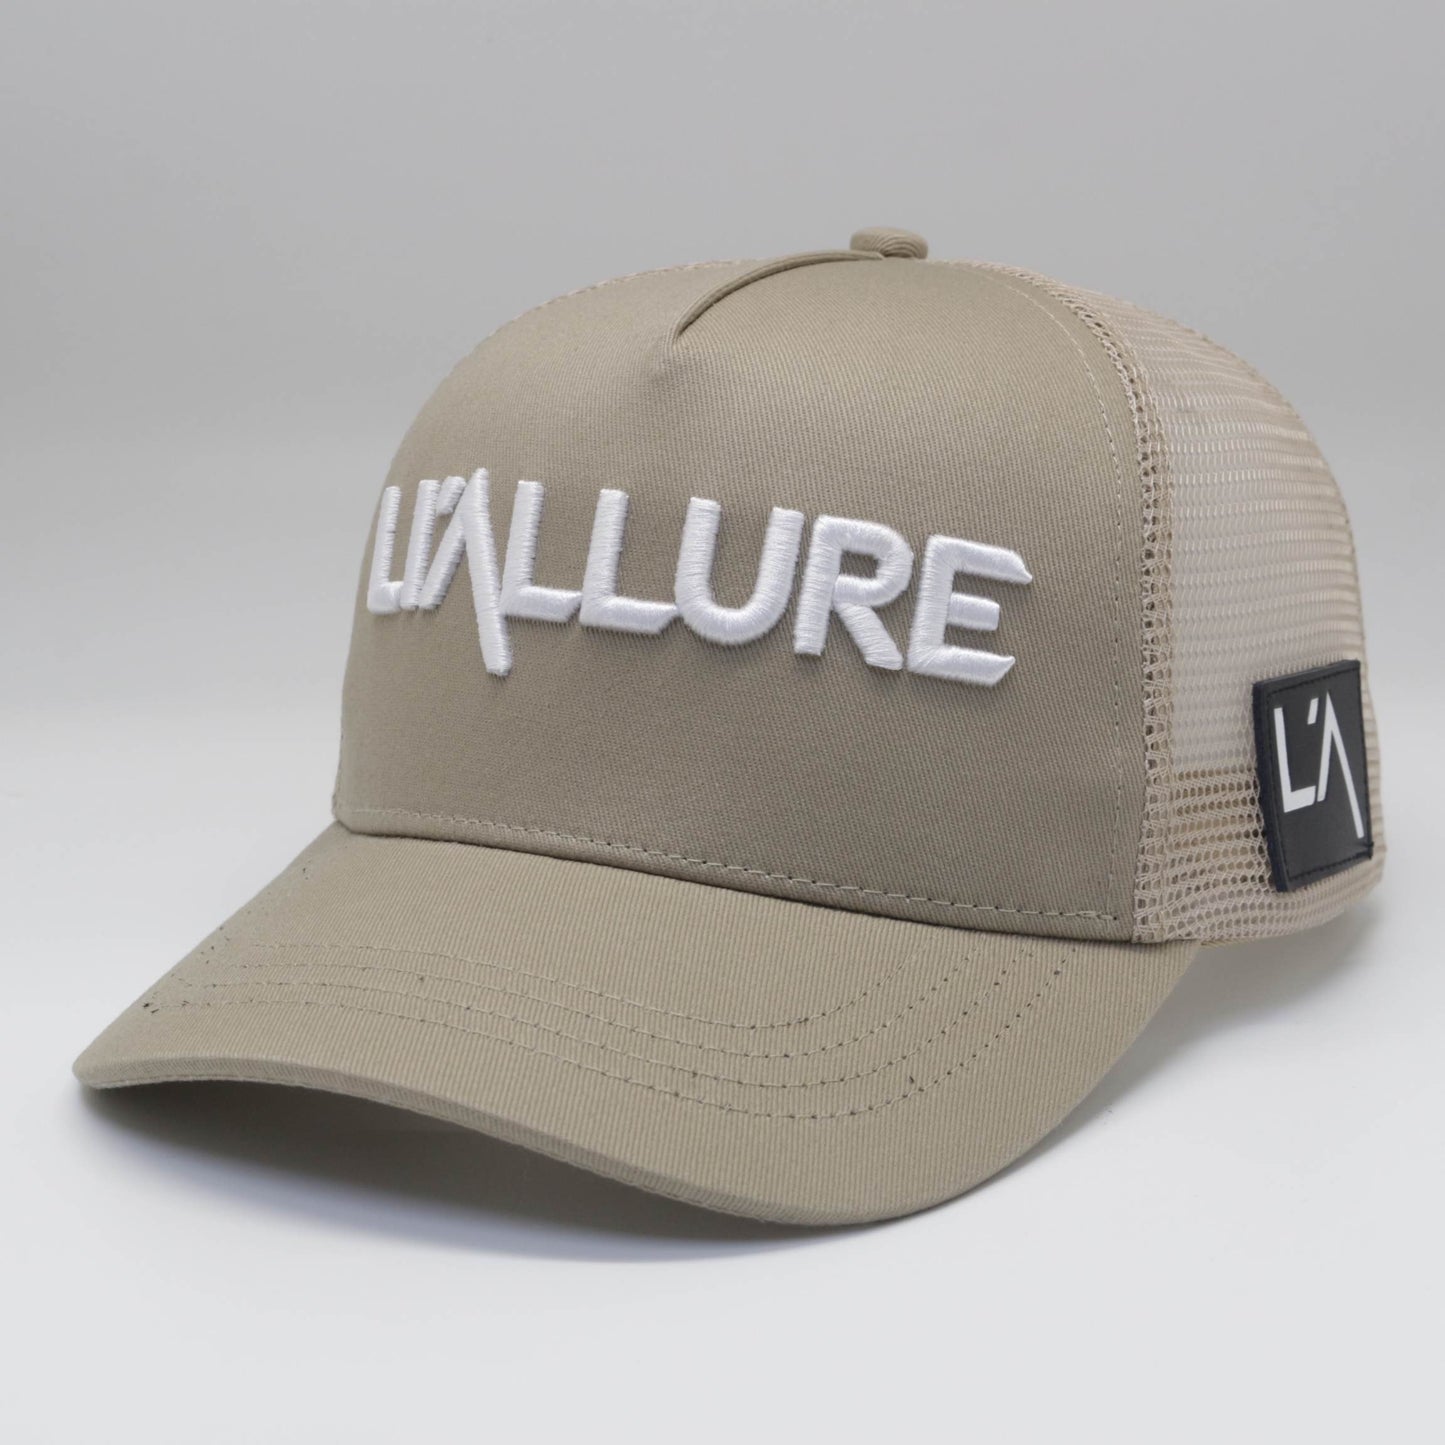 Li’allure Hat